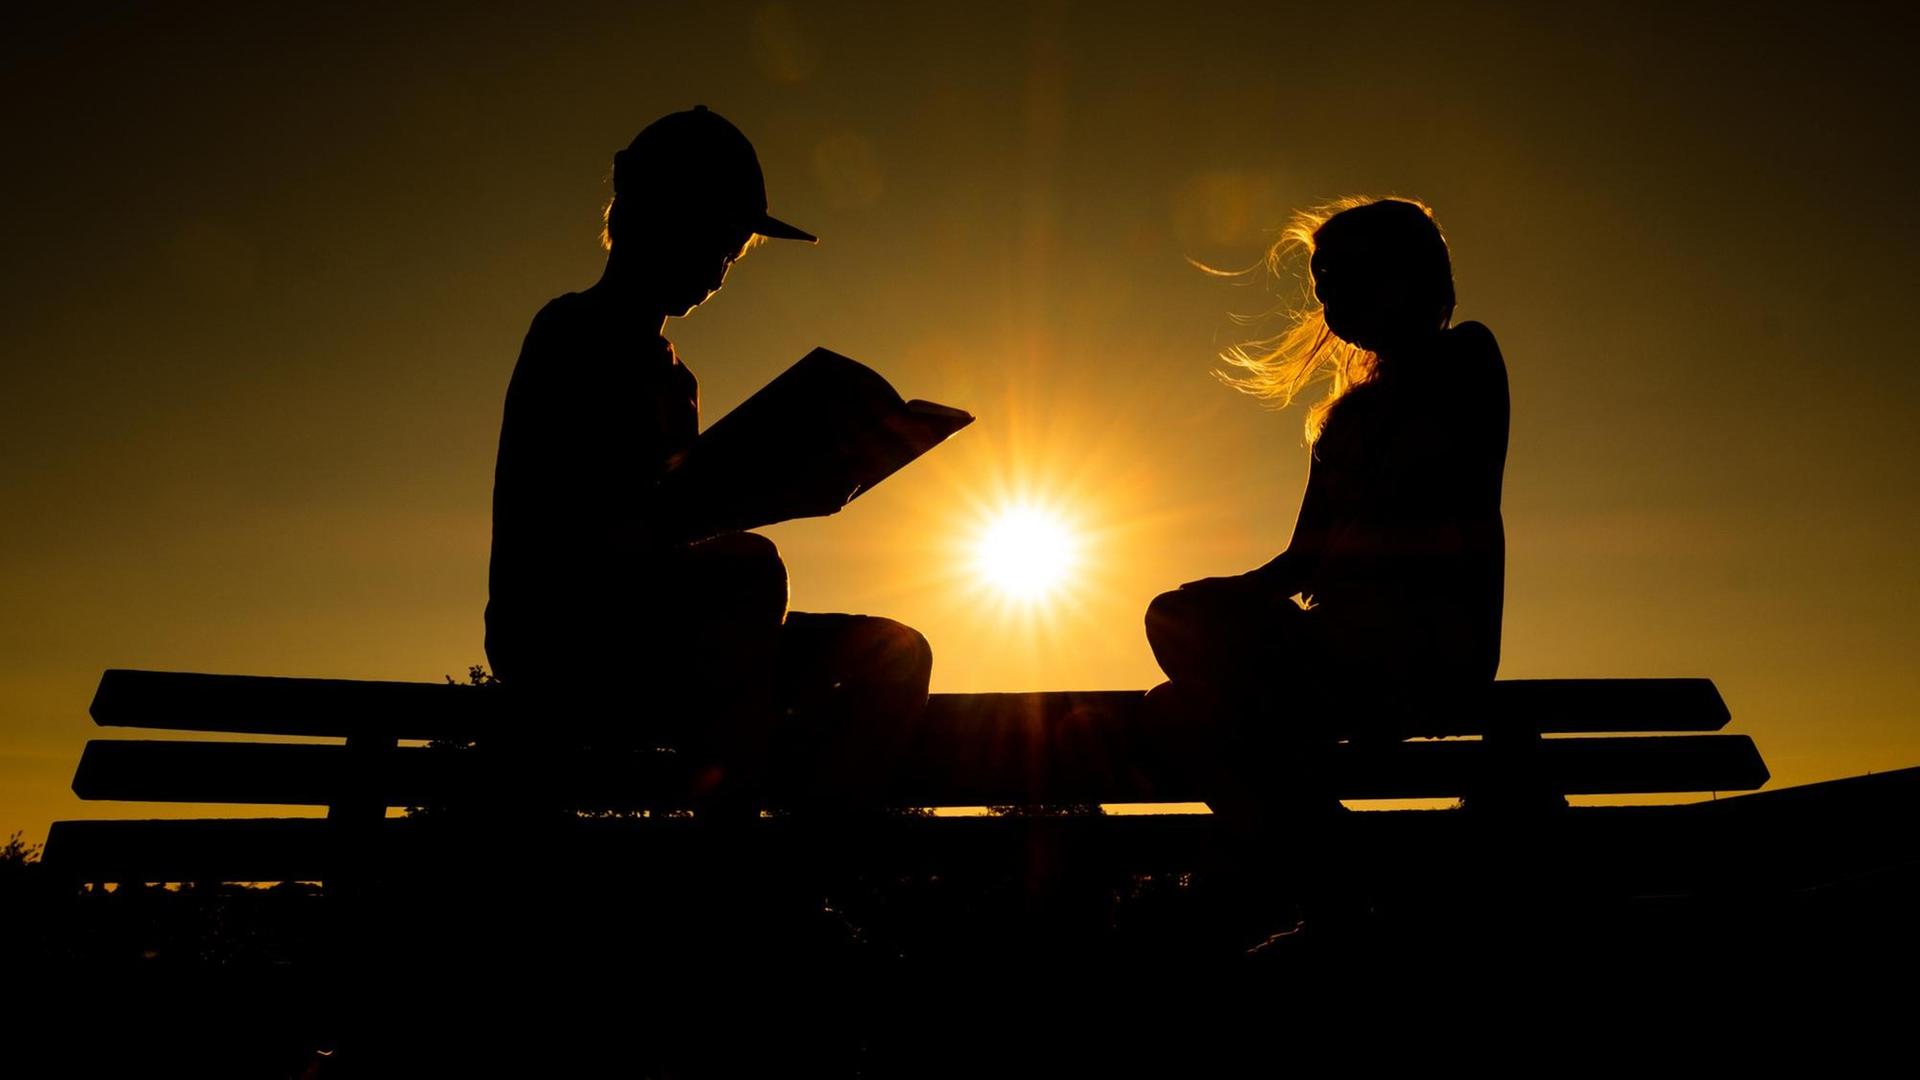 03.08.2018, Niedersachsen, Leer: Zwei Geschwister sitzen auf einer Parkbank und lesen, während hinter ihnen die Sonne untergeht. Foto: Mohssen Assanimoghaddam/dpa